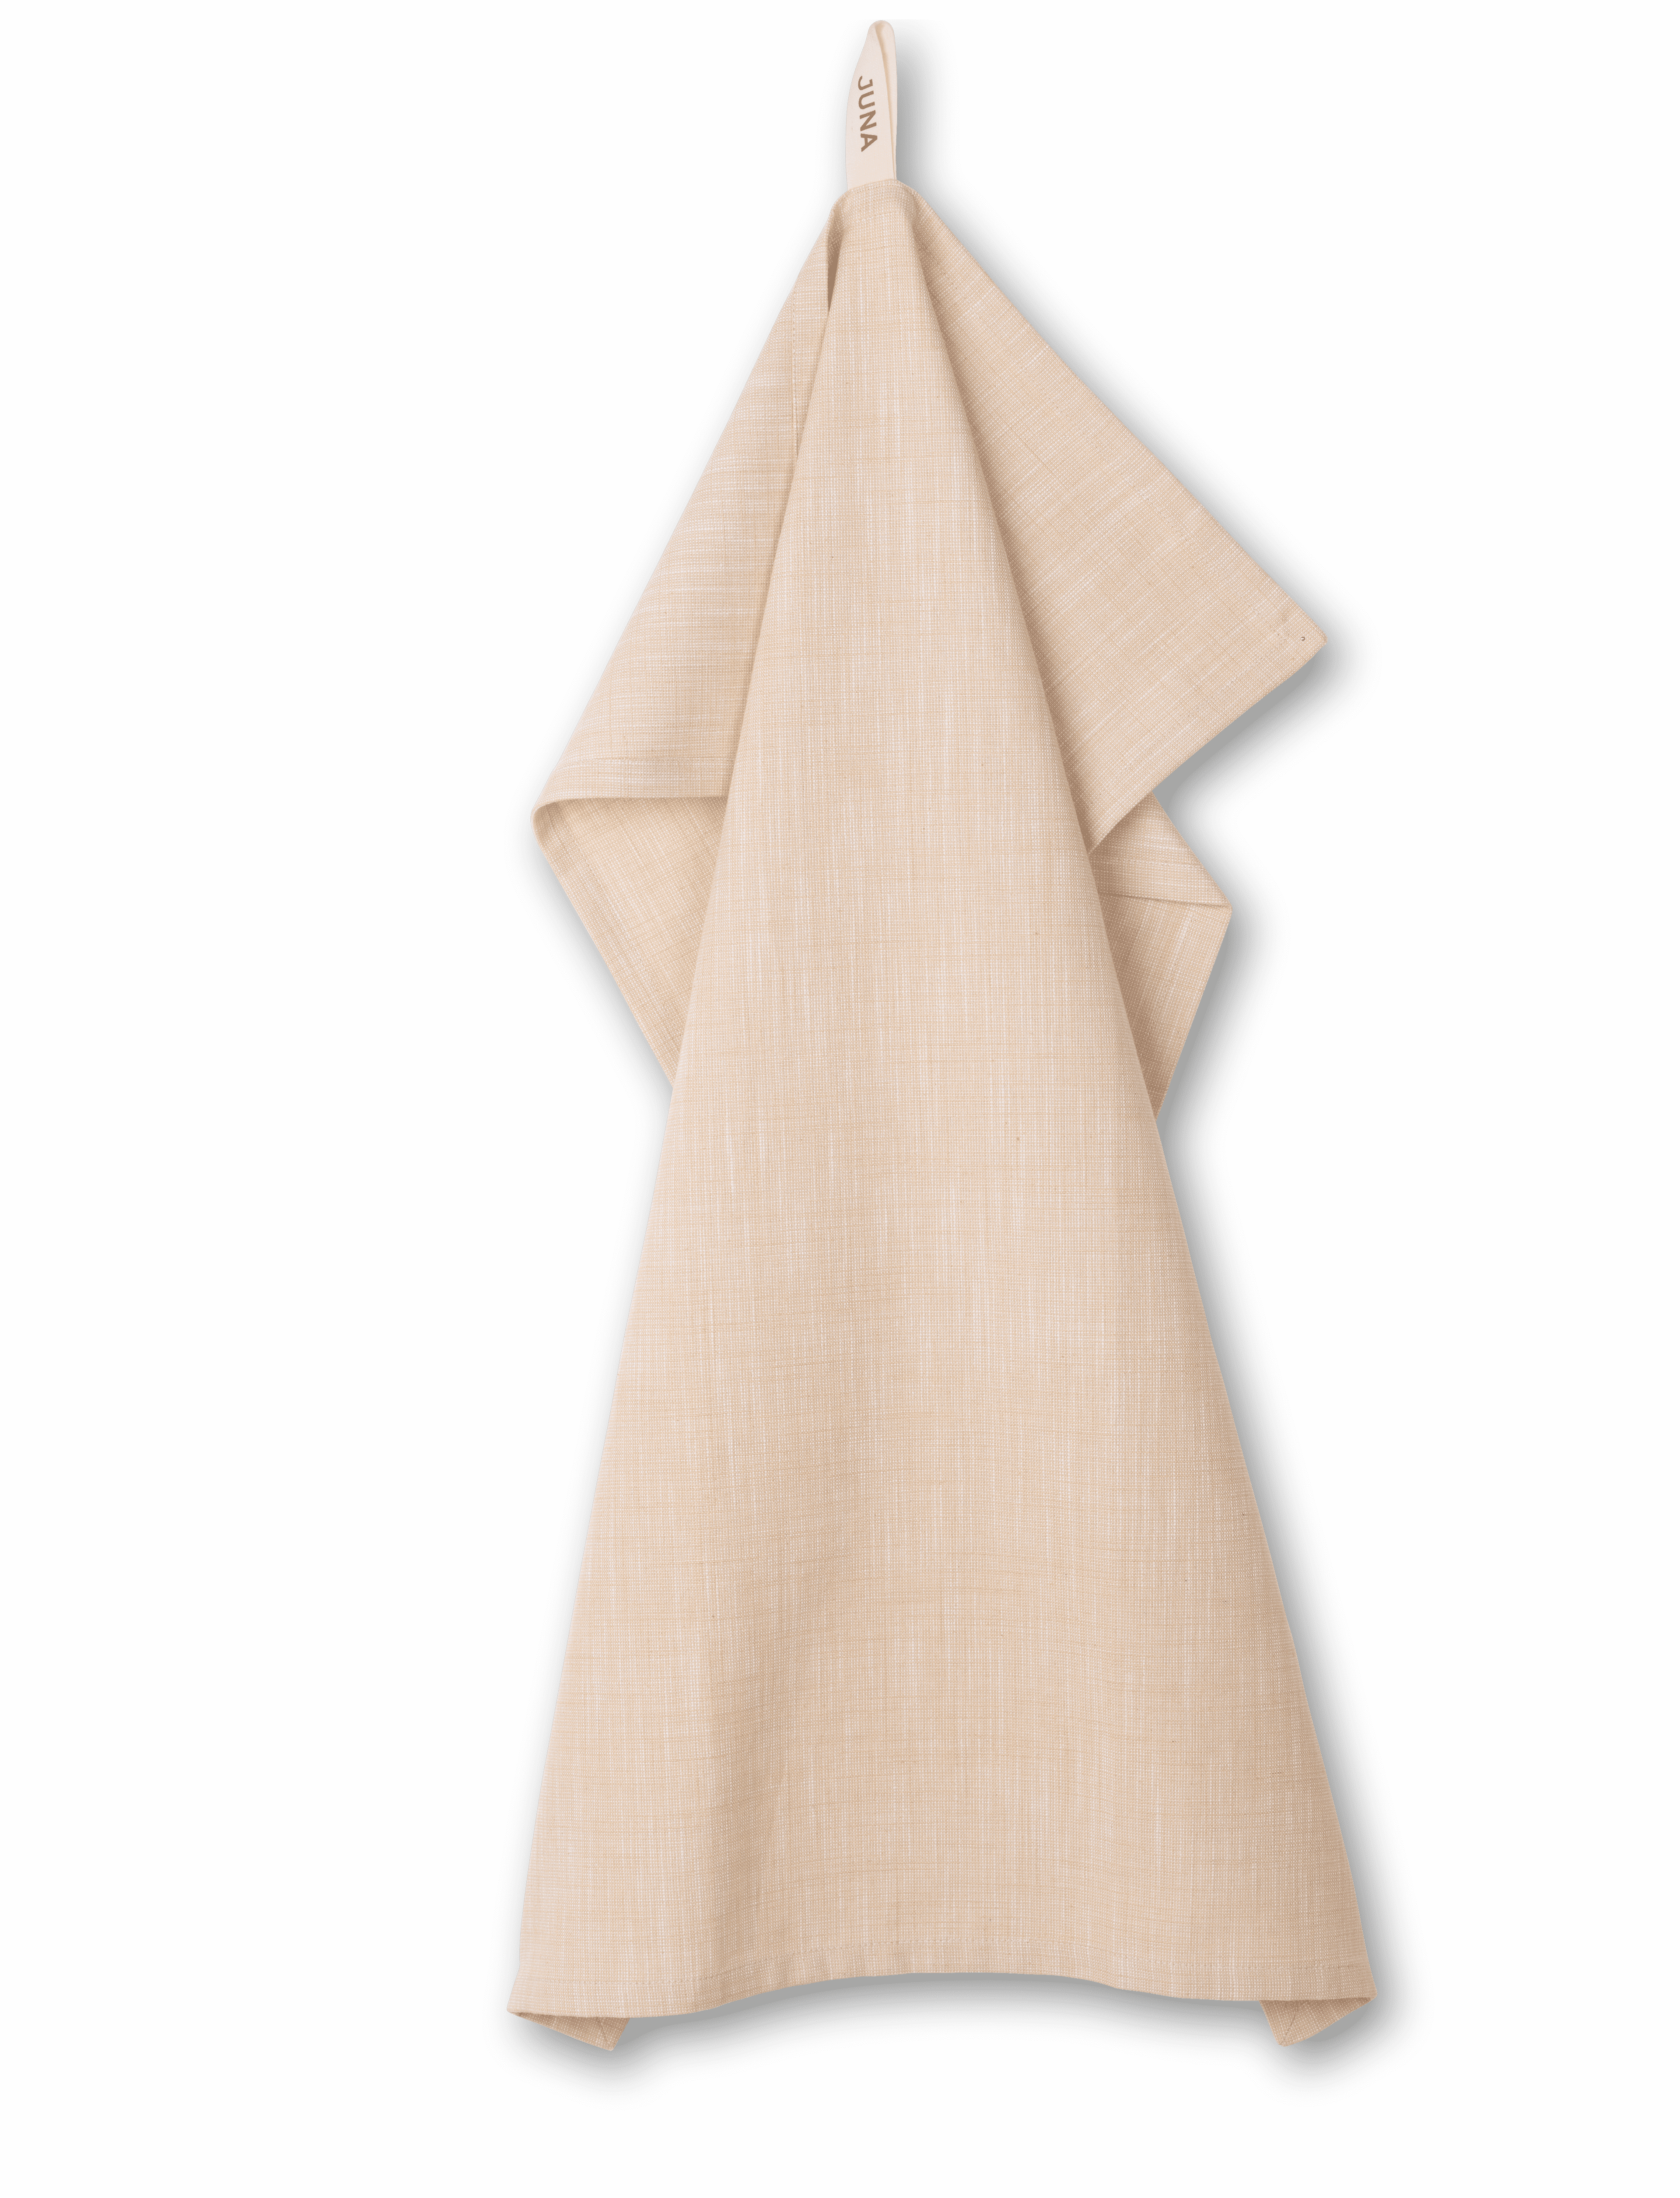 Tea towel ALPHA 50 x 70 cm, mint, Rosendahl 